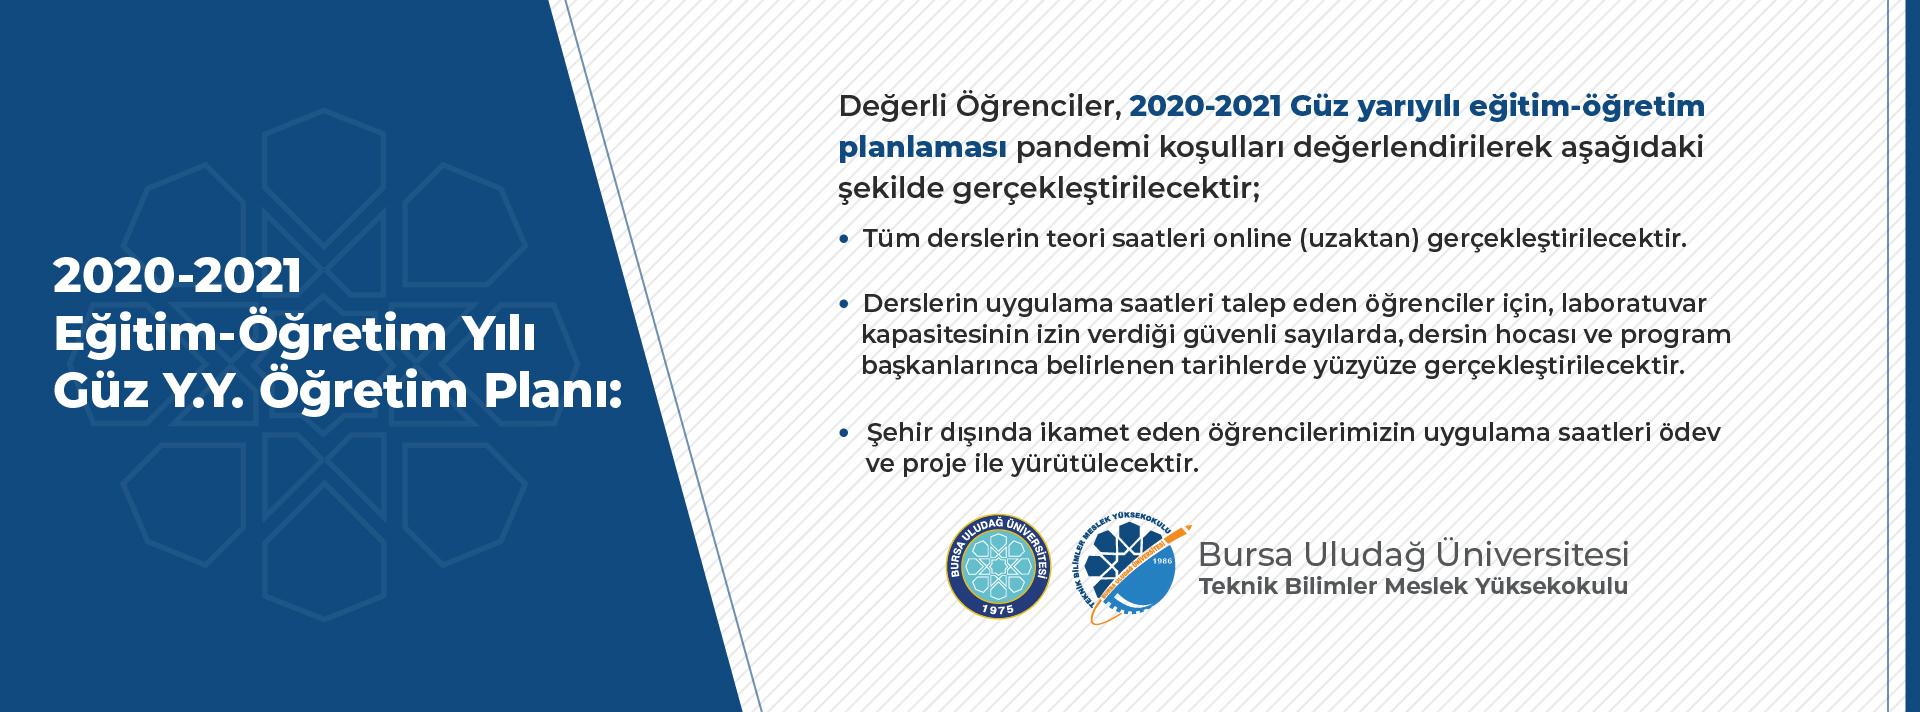  2020-2021 Eğitim-Öğretim Yılı Güz Yarıyılı Öğretim Planı 